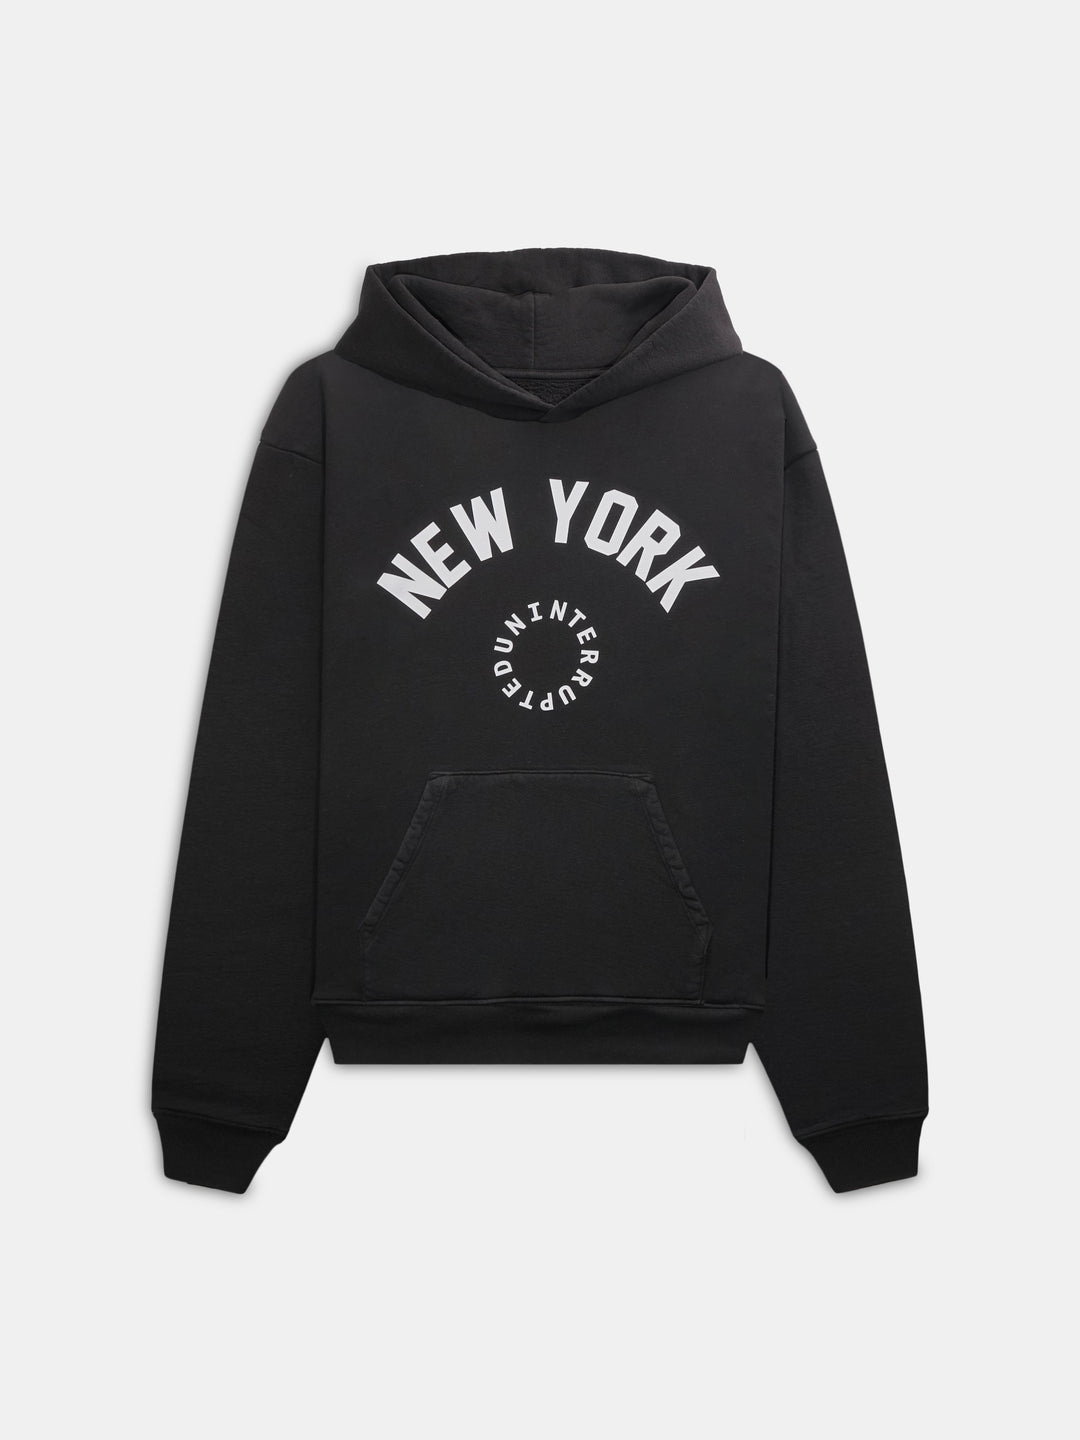 New York Circle Logo Hoodie Black front